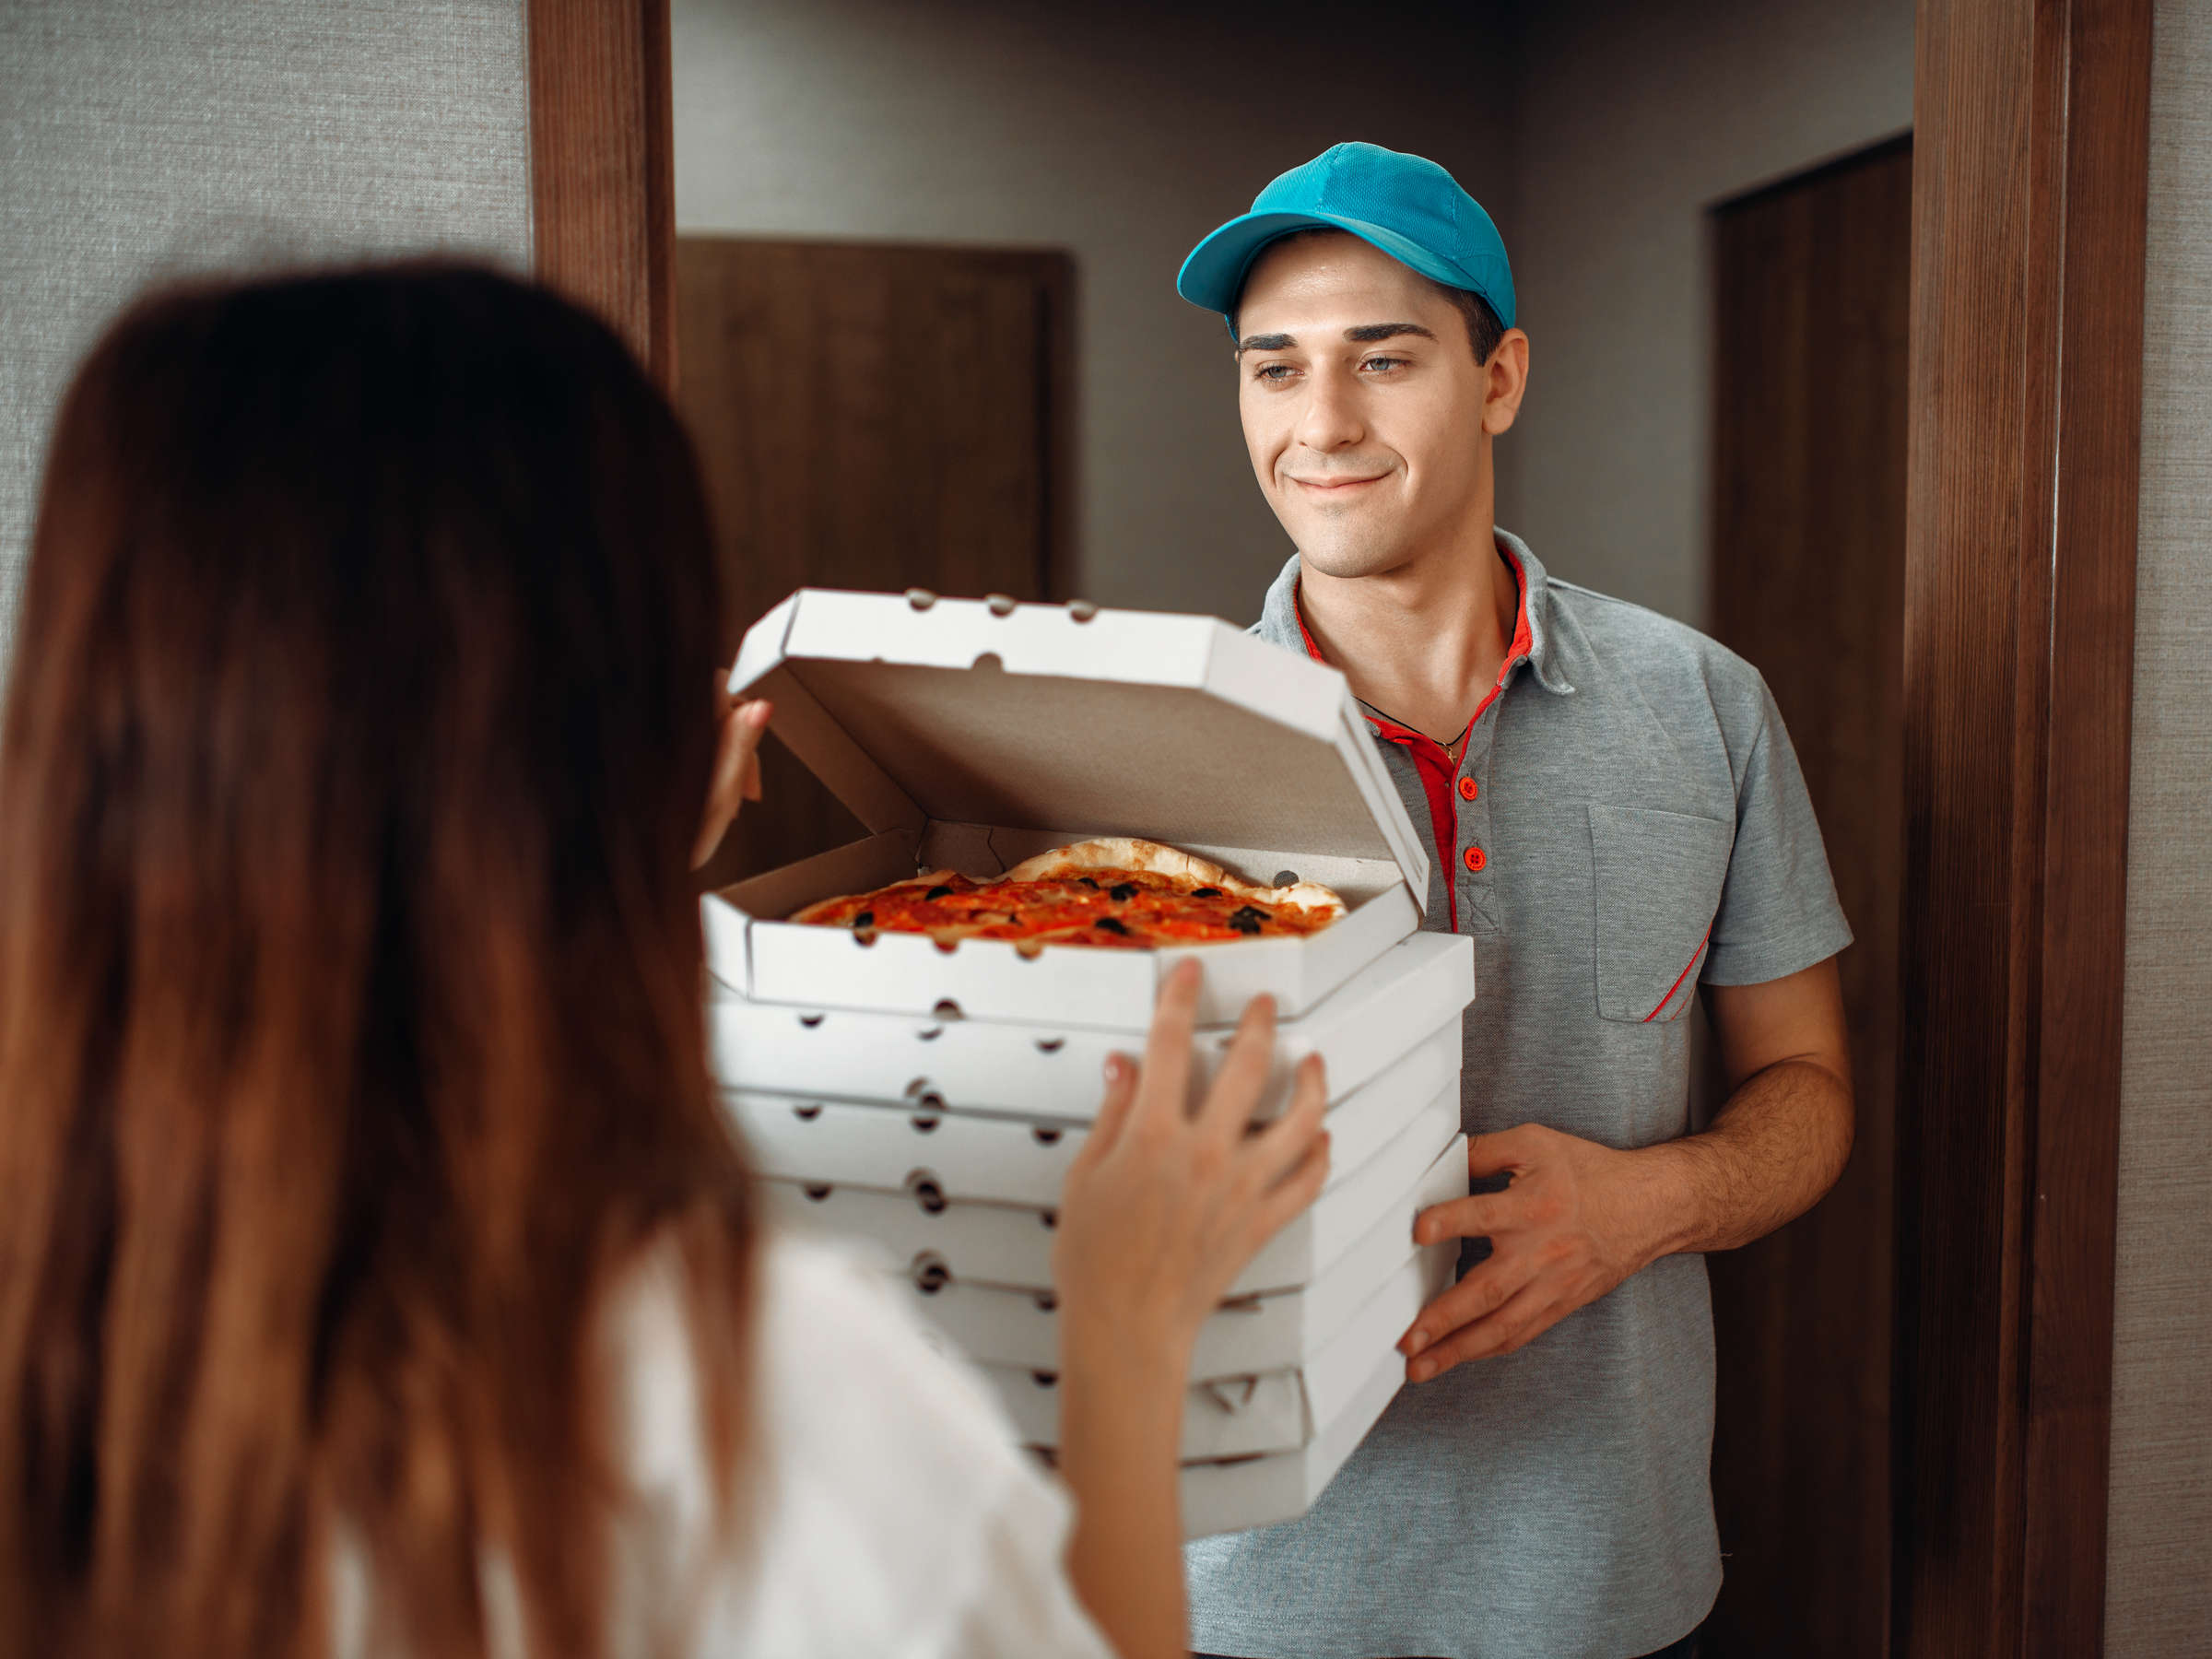 Муж смотрит как жена сосет доставщику пиццы